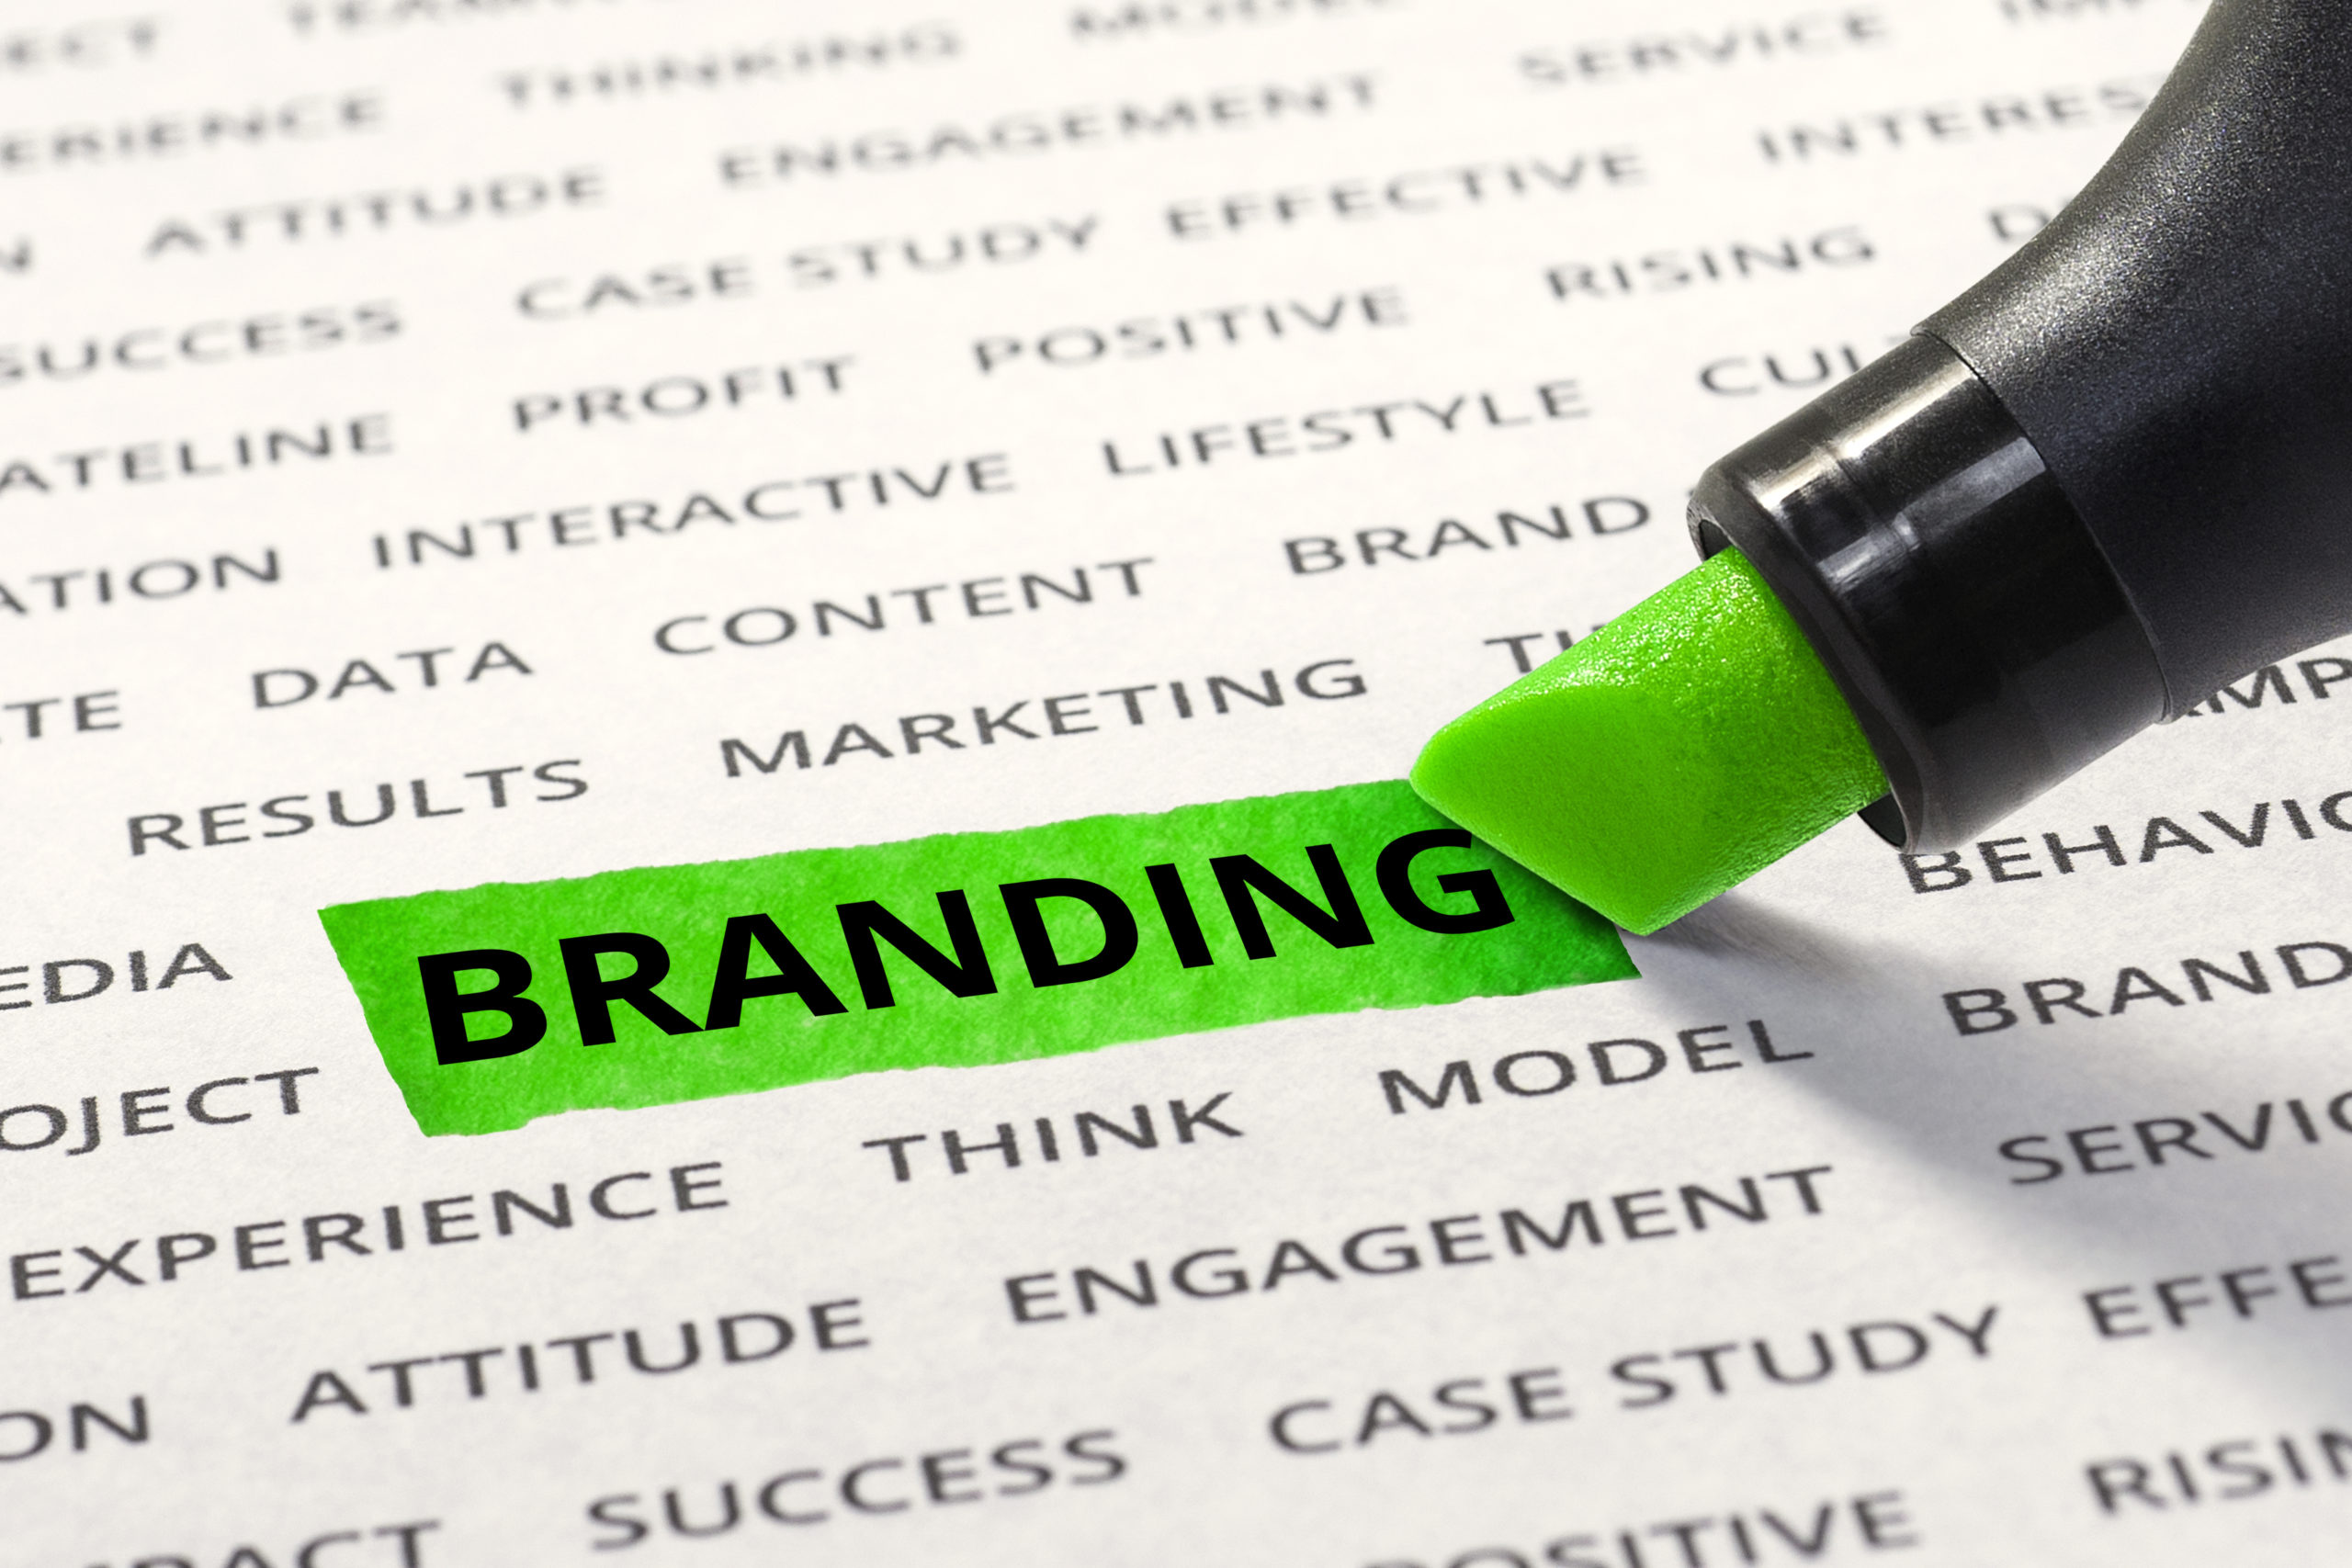 Diferencias entre Branding y Marketing